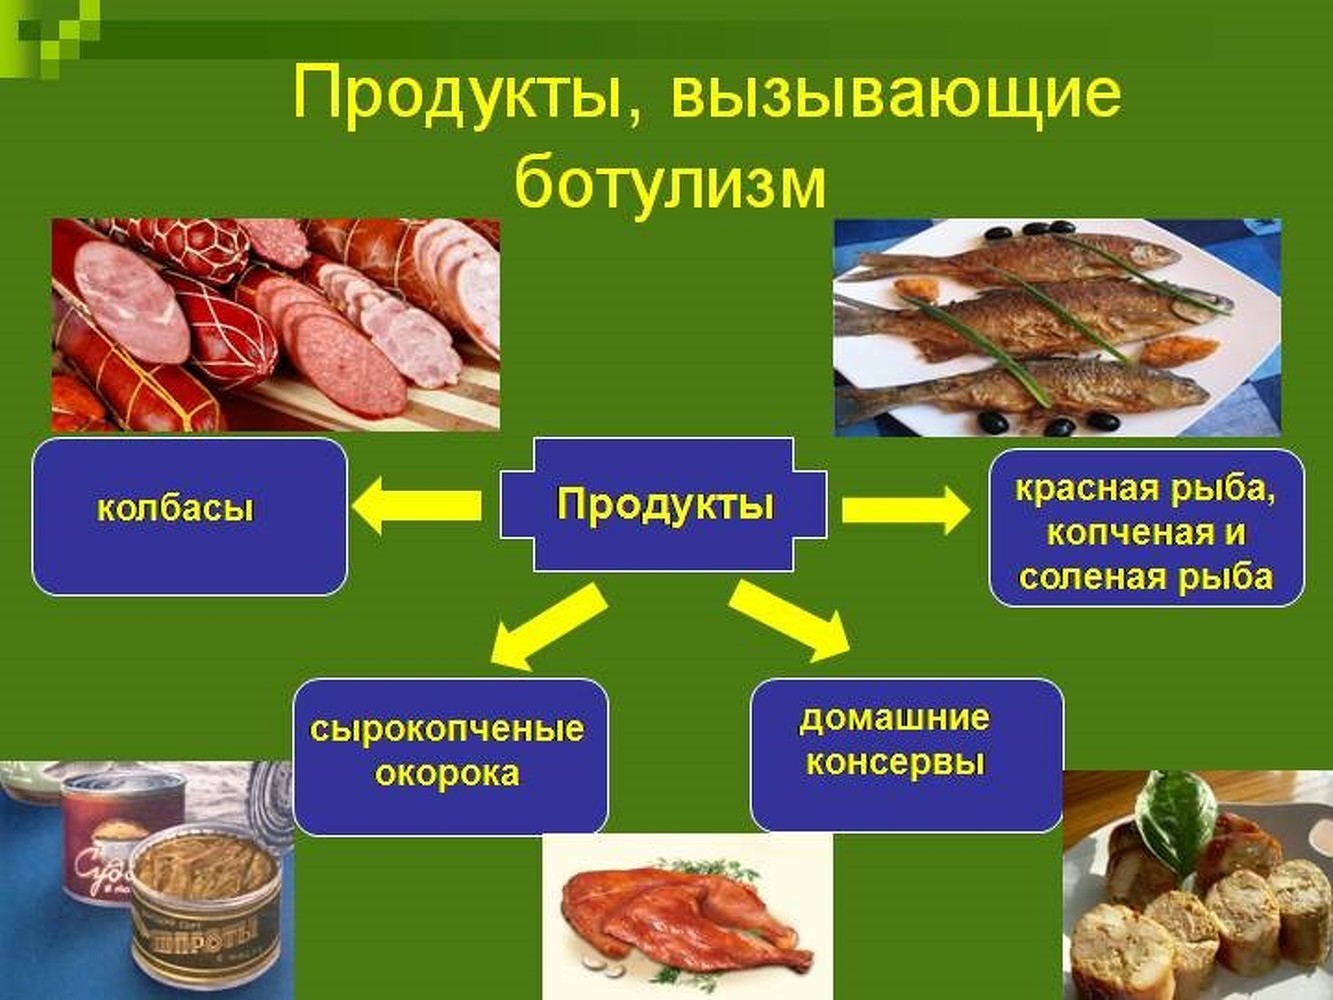 В Бишкеке отмечают резкий рост пищевого отравления - уже 23 случая — Today.kg